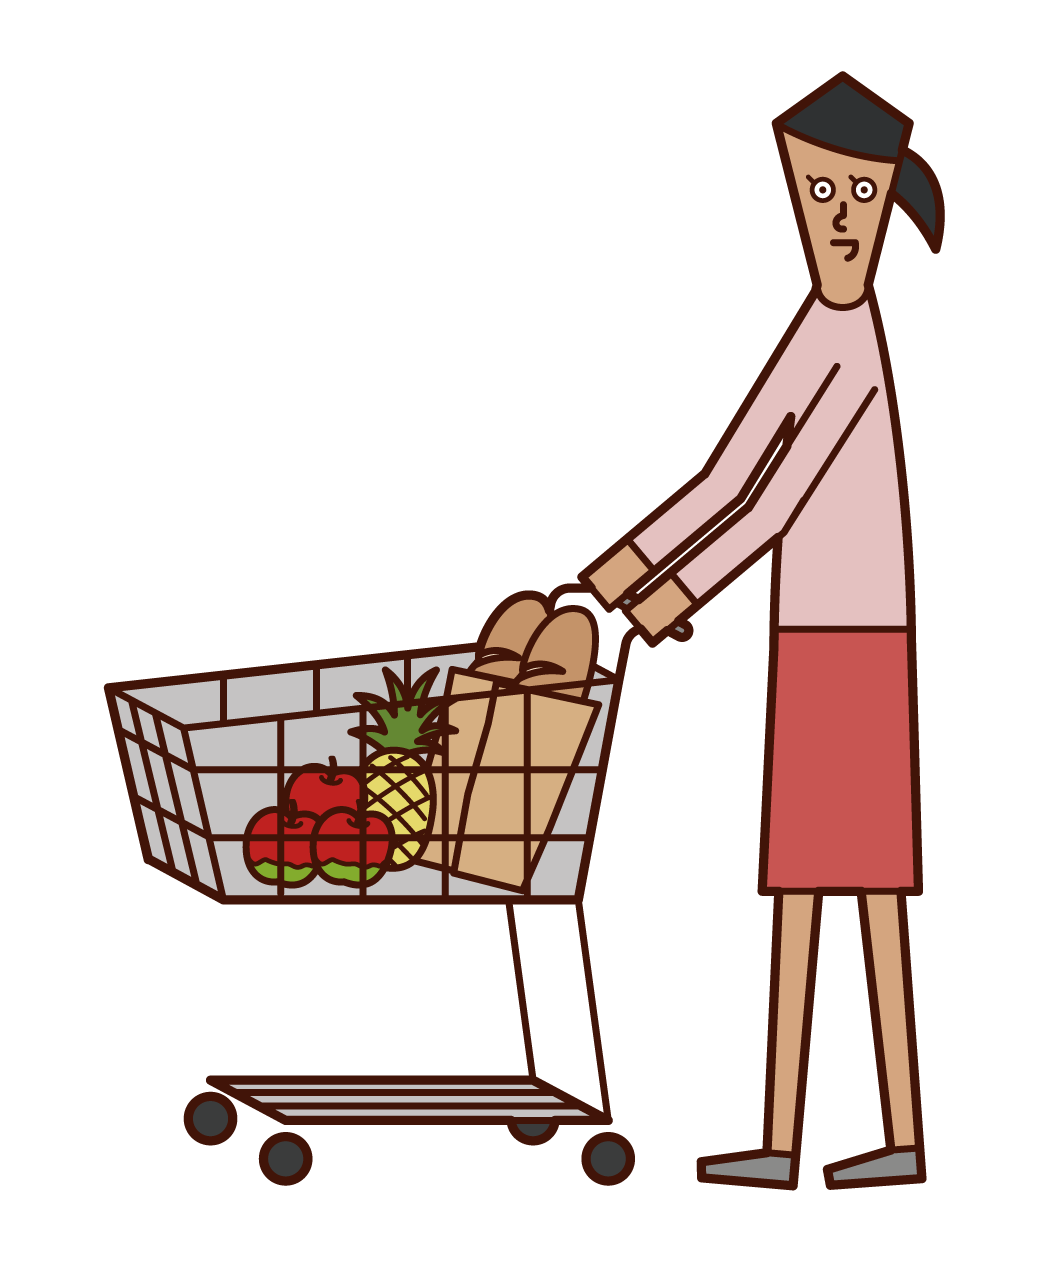 スーパーマーケットで買い物をする人 女性 のイラスト フリーイラスト素材 Kukukeke ククケケ